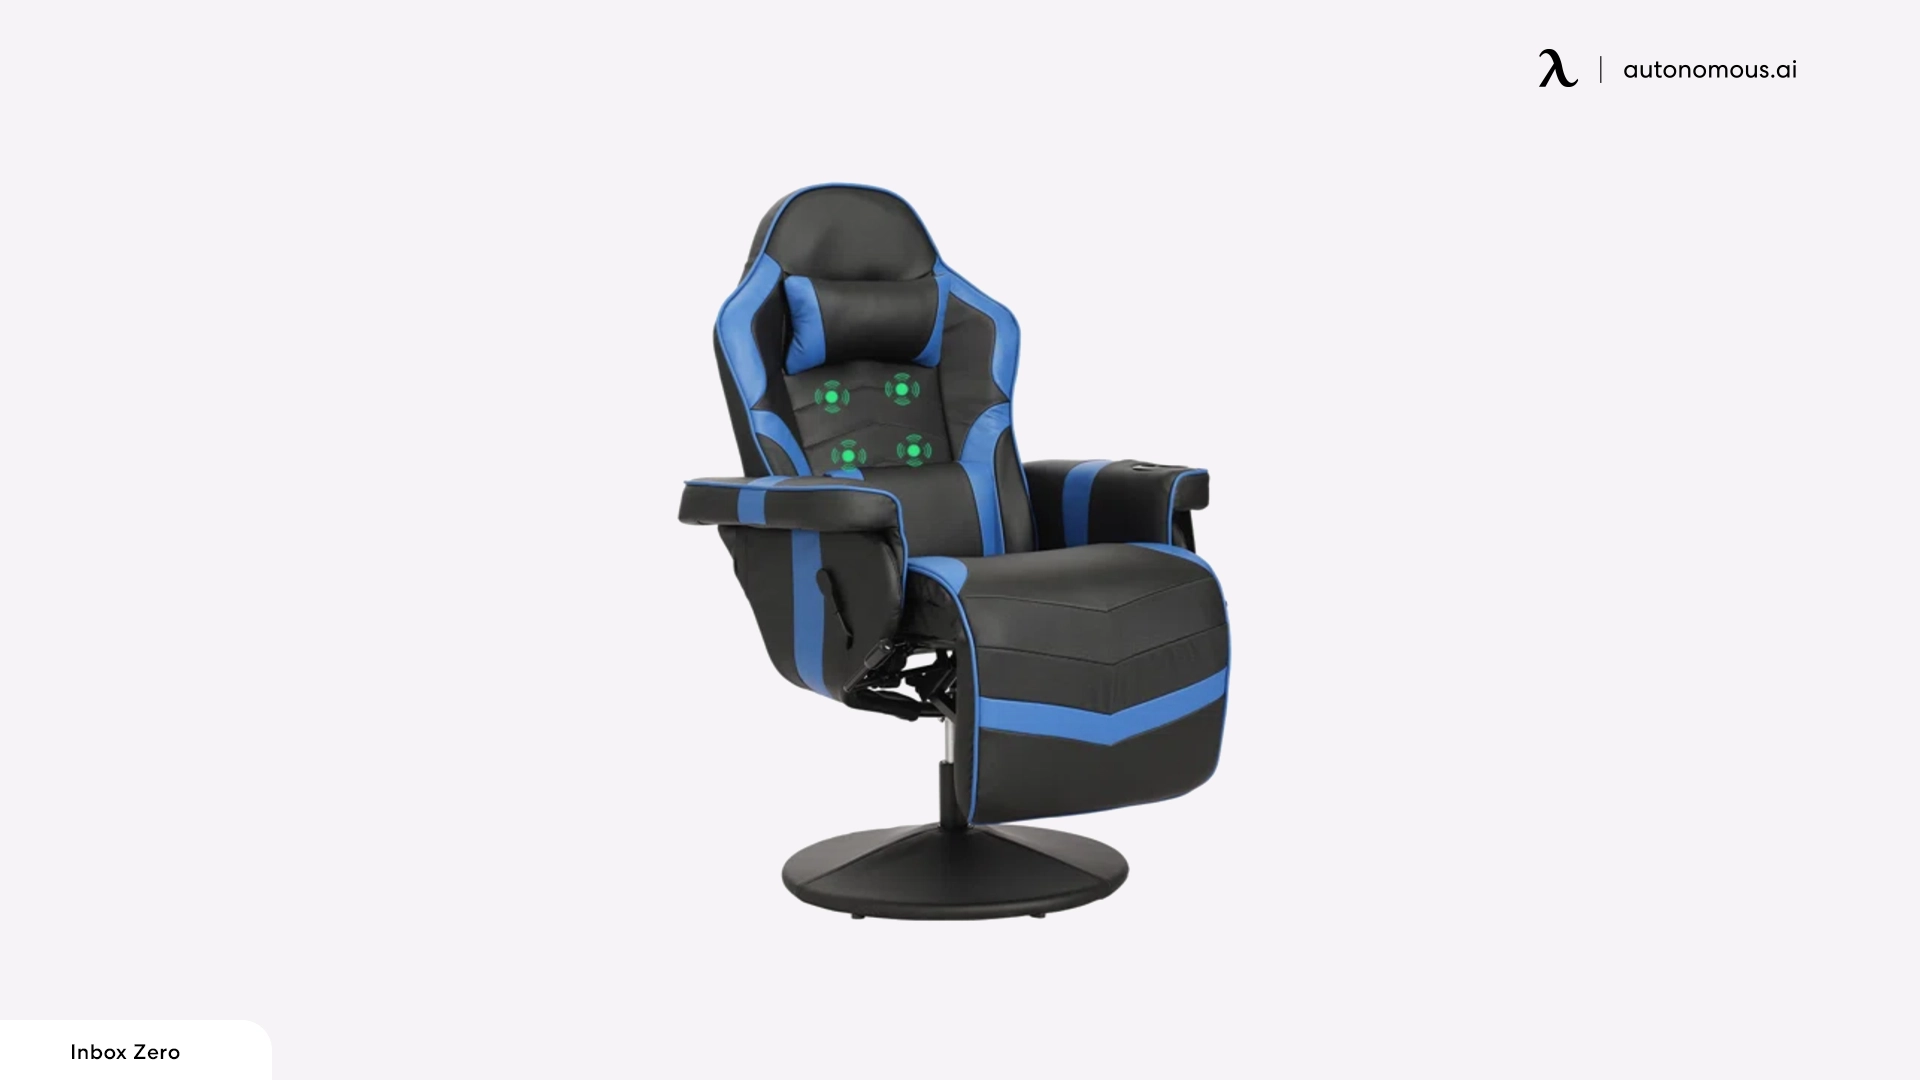 Inbox Zero Gaming Chair